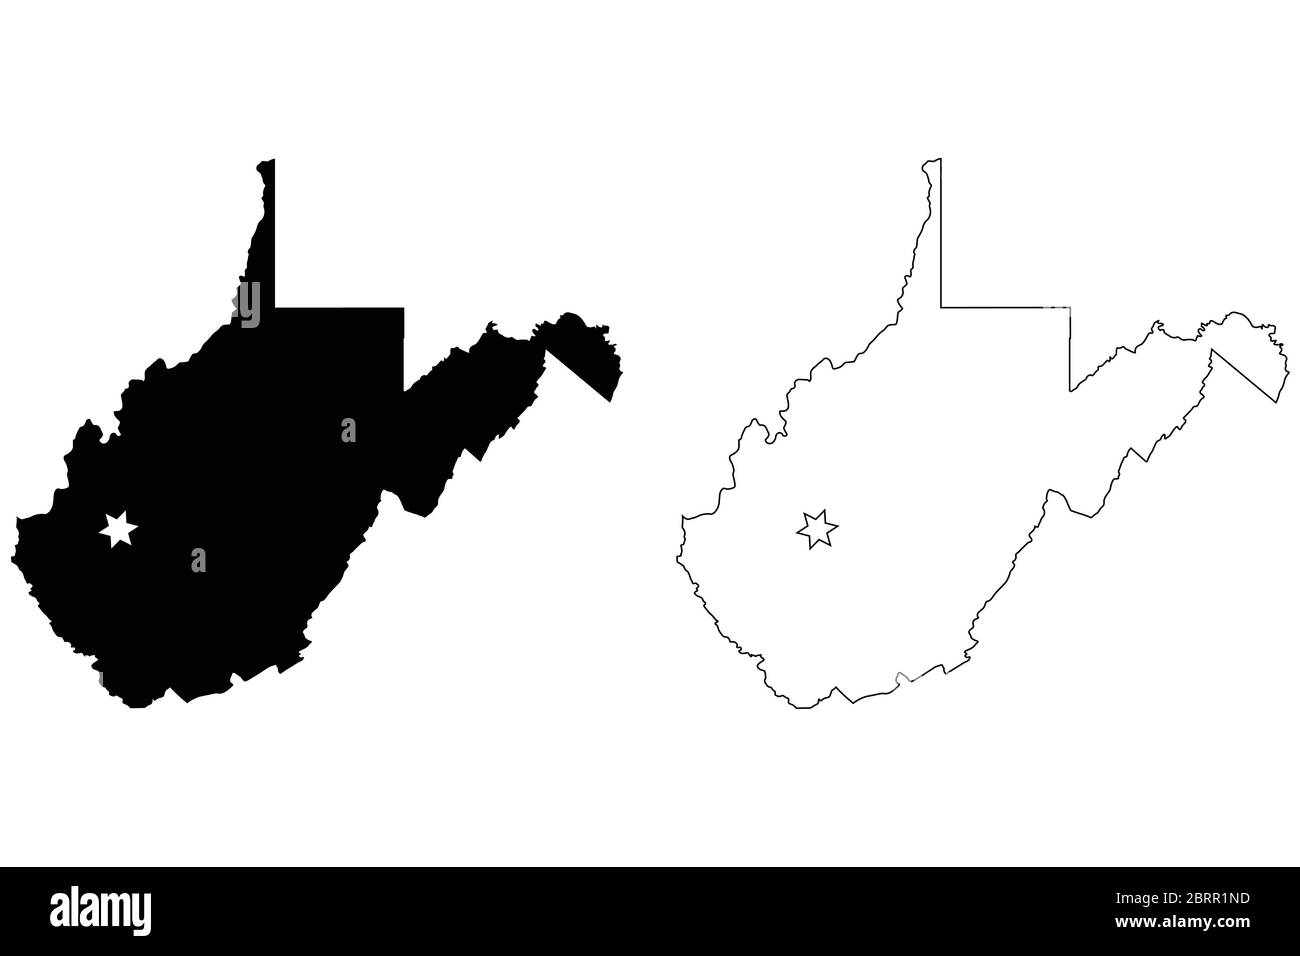 West Virginia WV State Map USA mit Capital City Star in Charleston. Schwarze Silhouette und umreißen isolierte Karten auf weißem Hintergrund. EPS-Vektor Stock Vektor